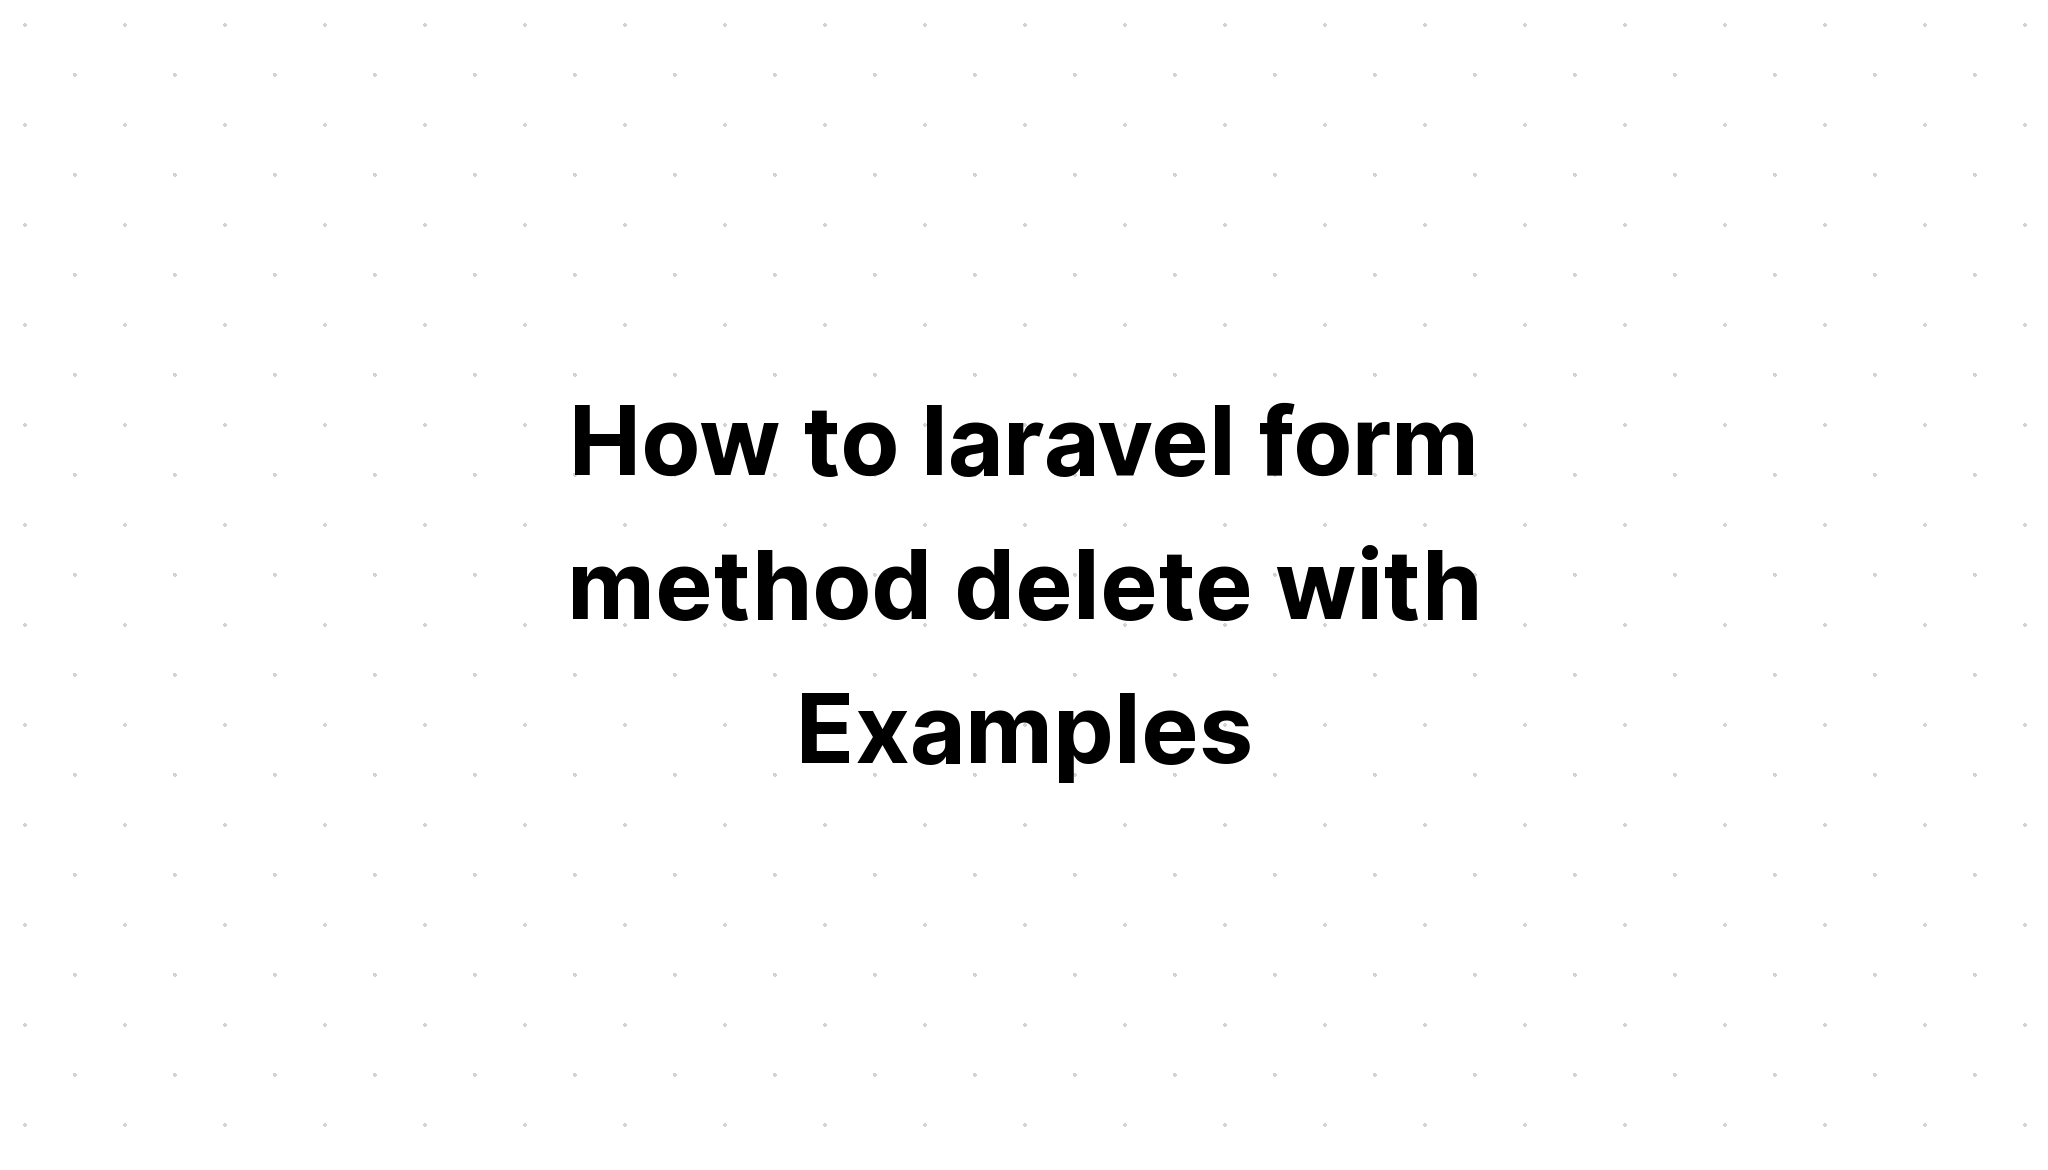 Cách xóa phương thức biểu mẫu laravel với các ví dụ